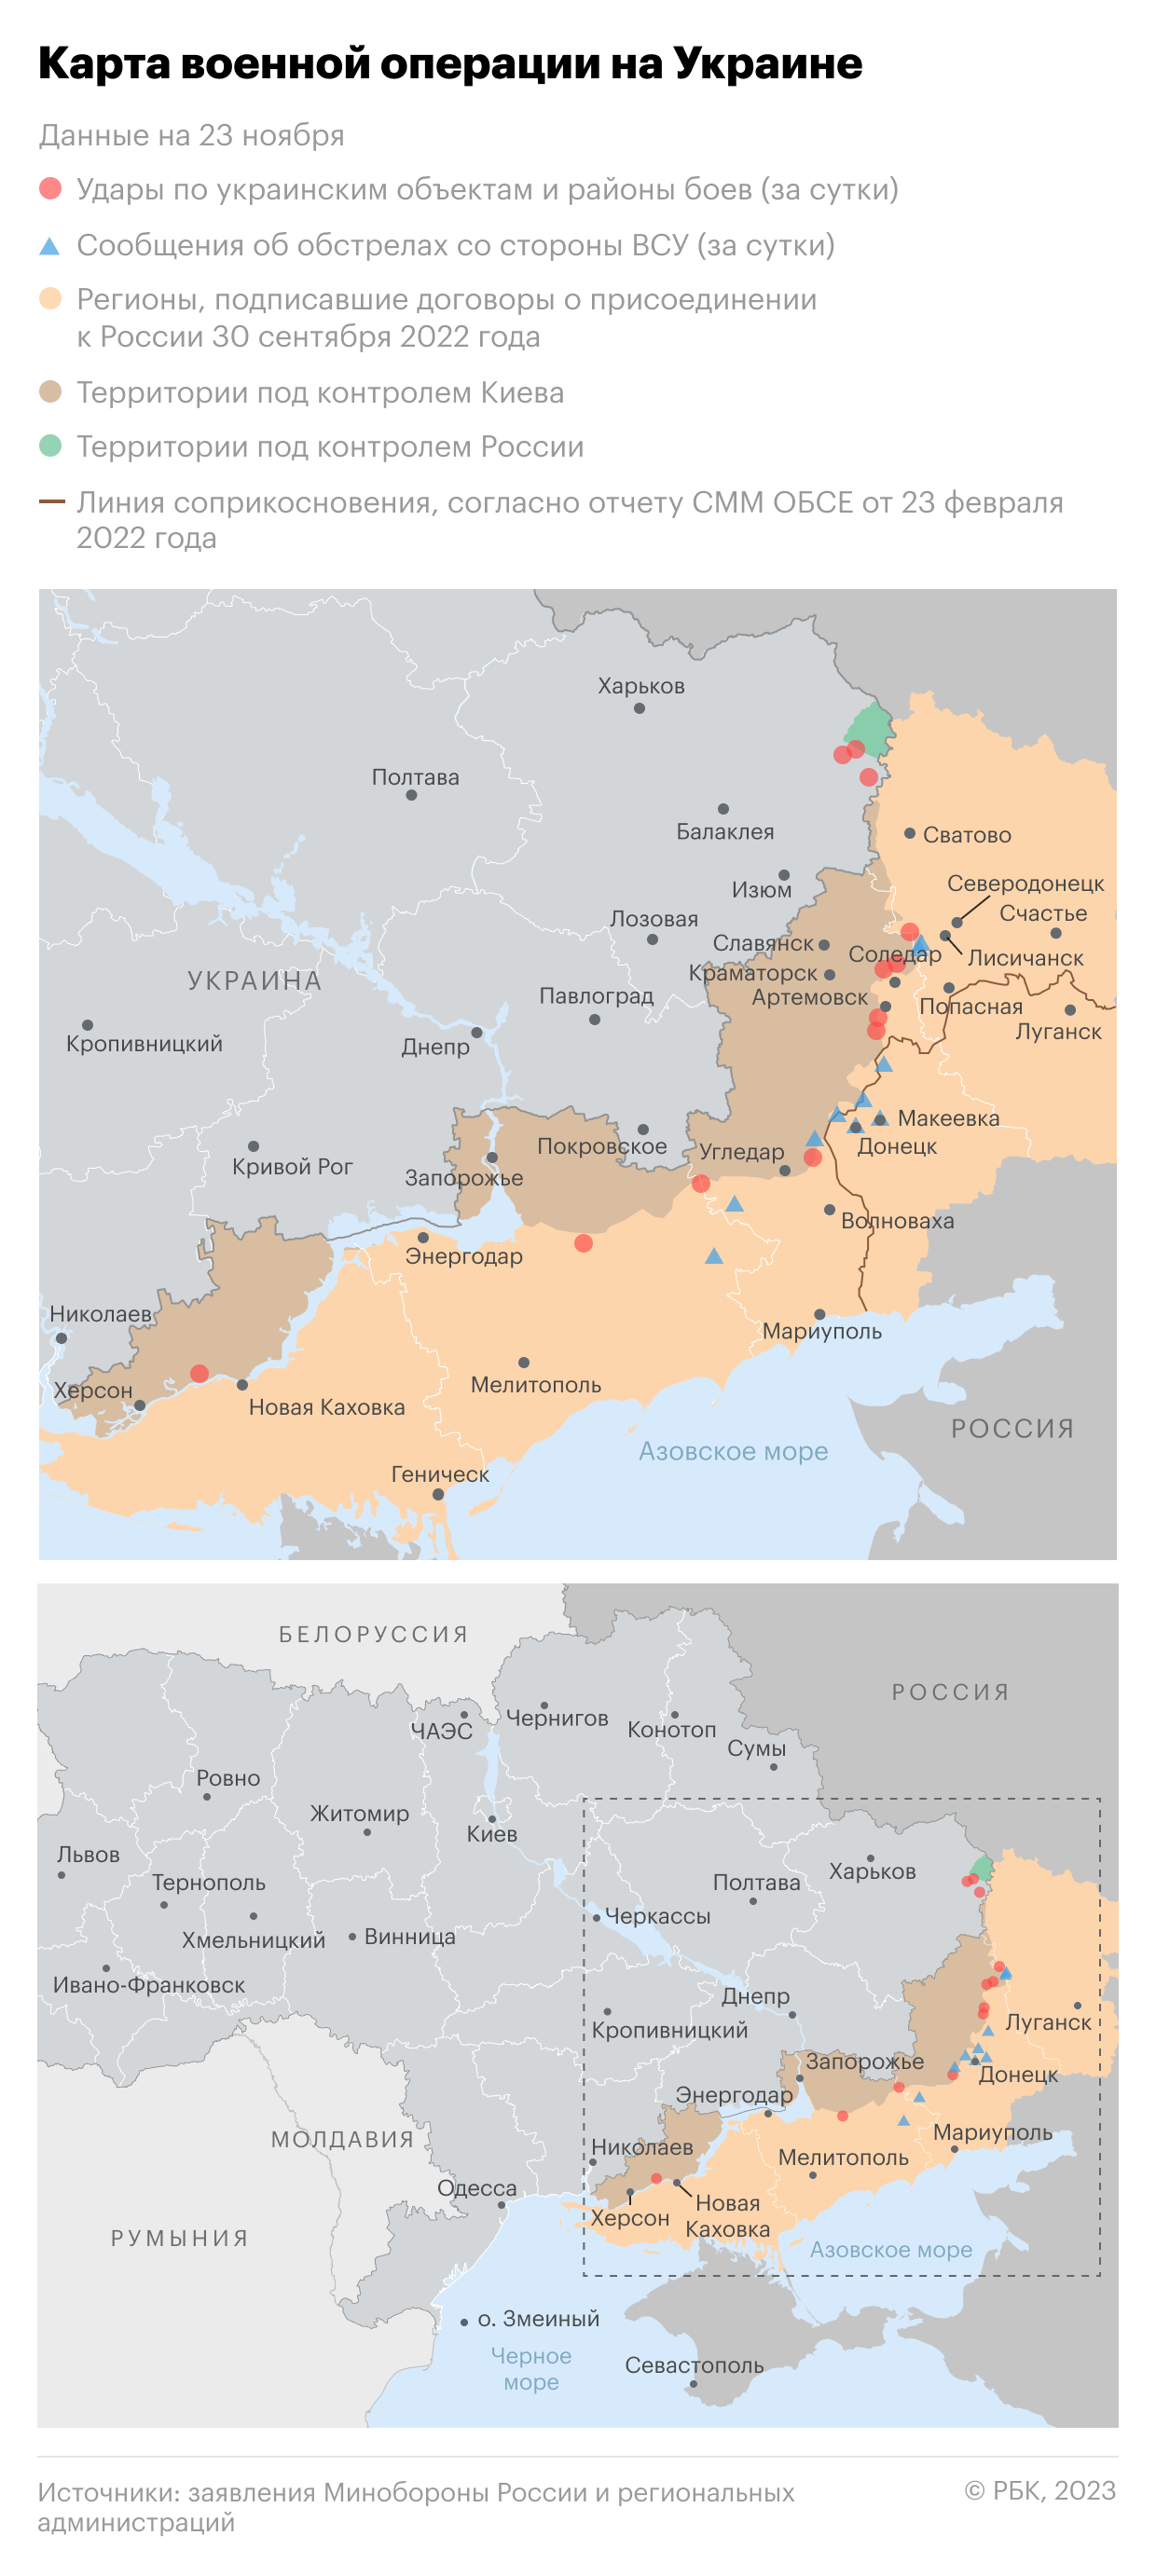 Военная операция на Украине. Карта на 23 ноября